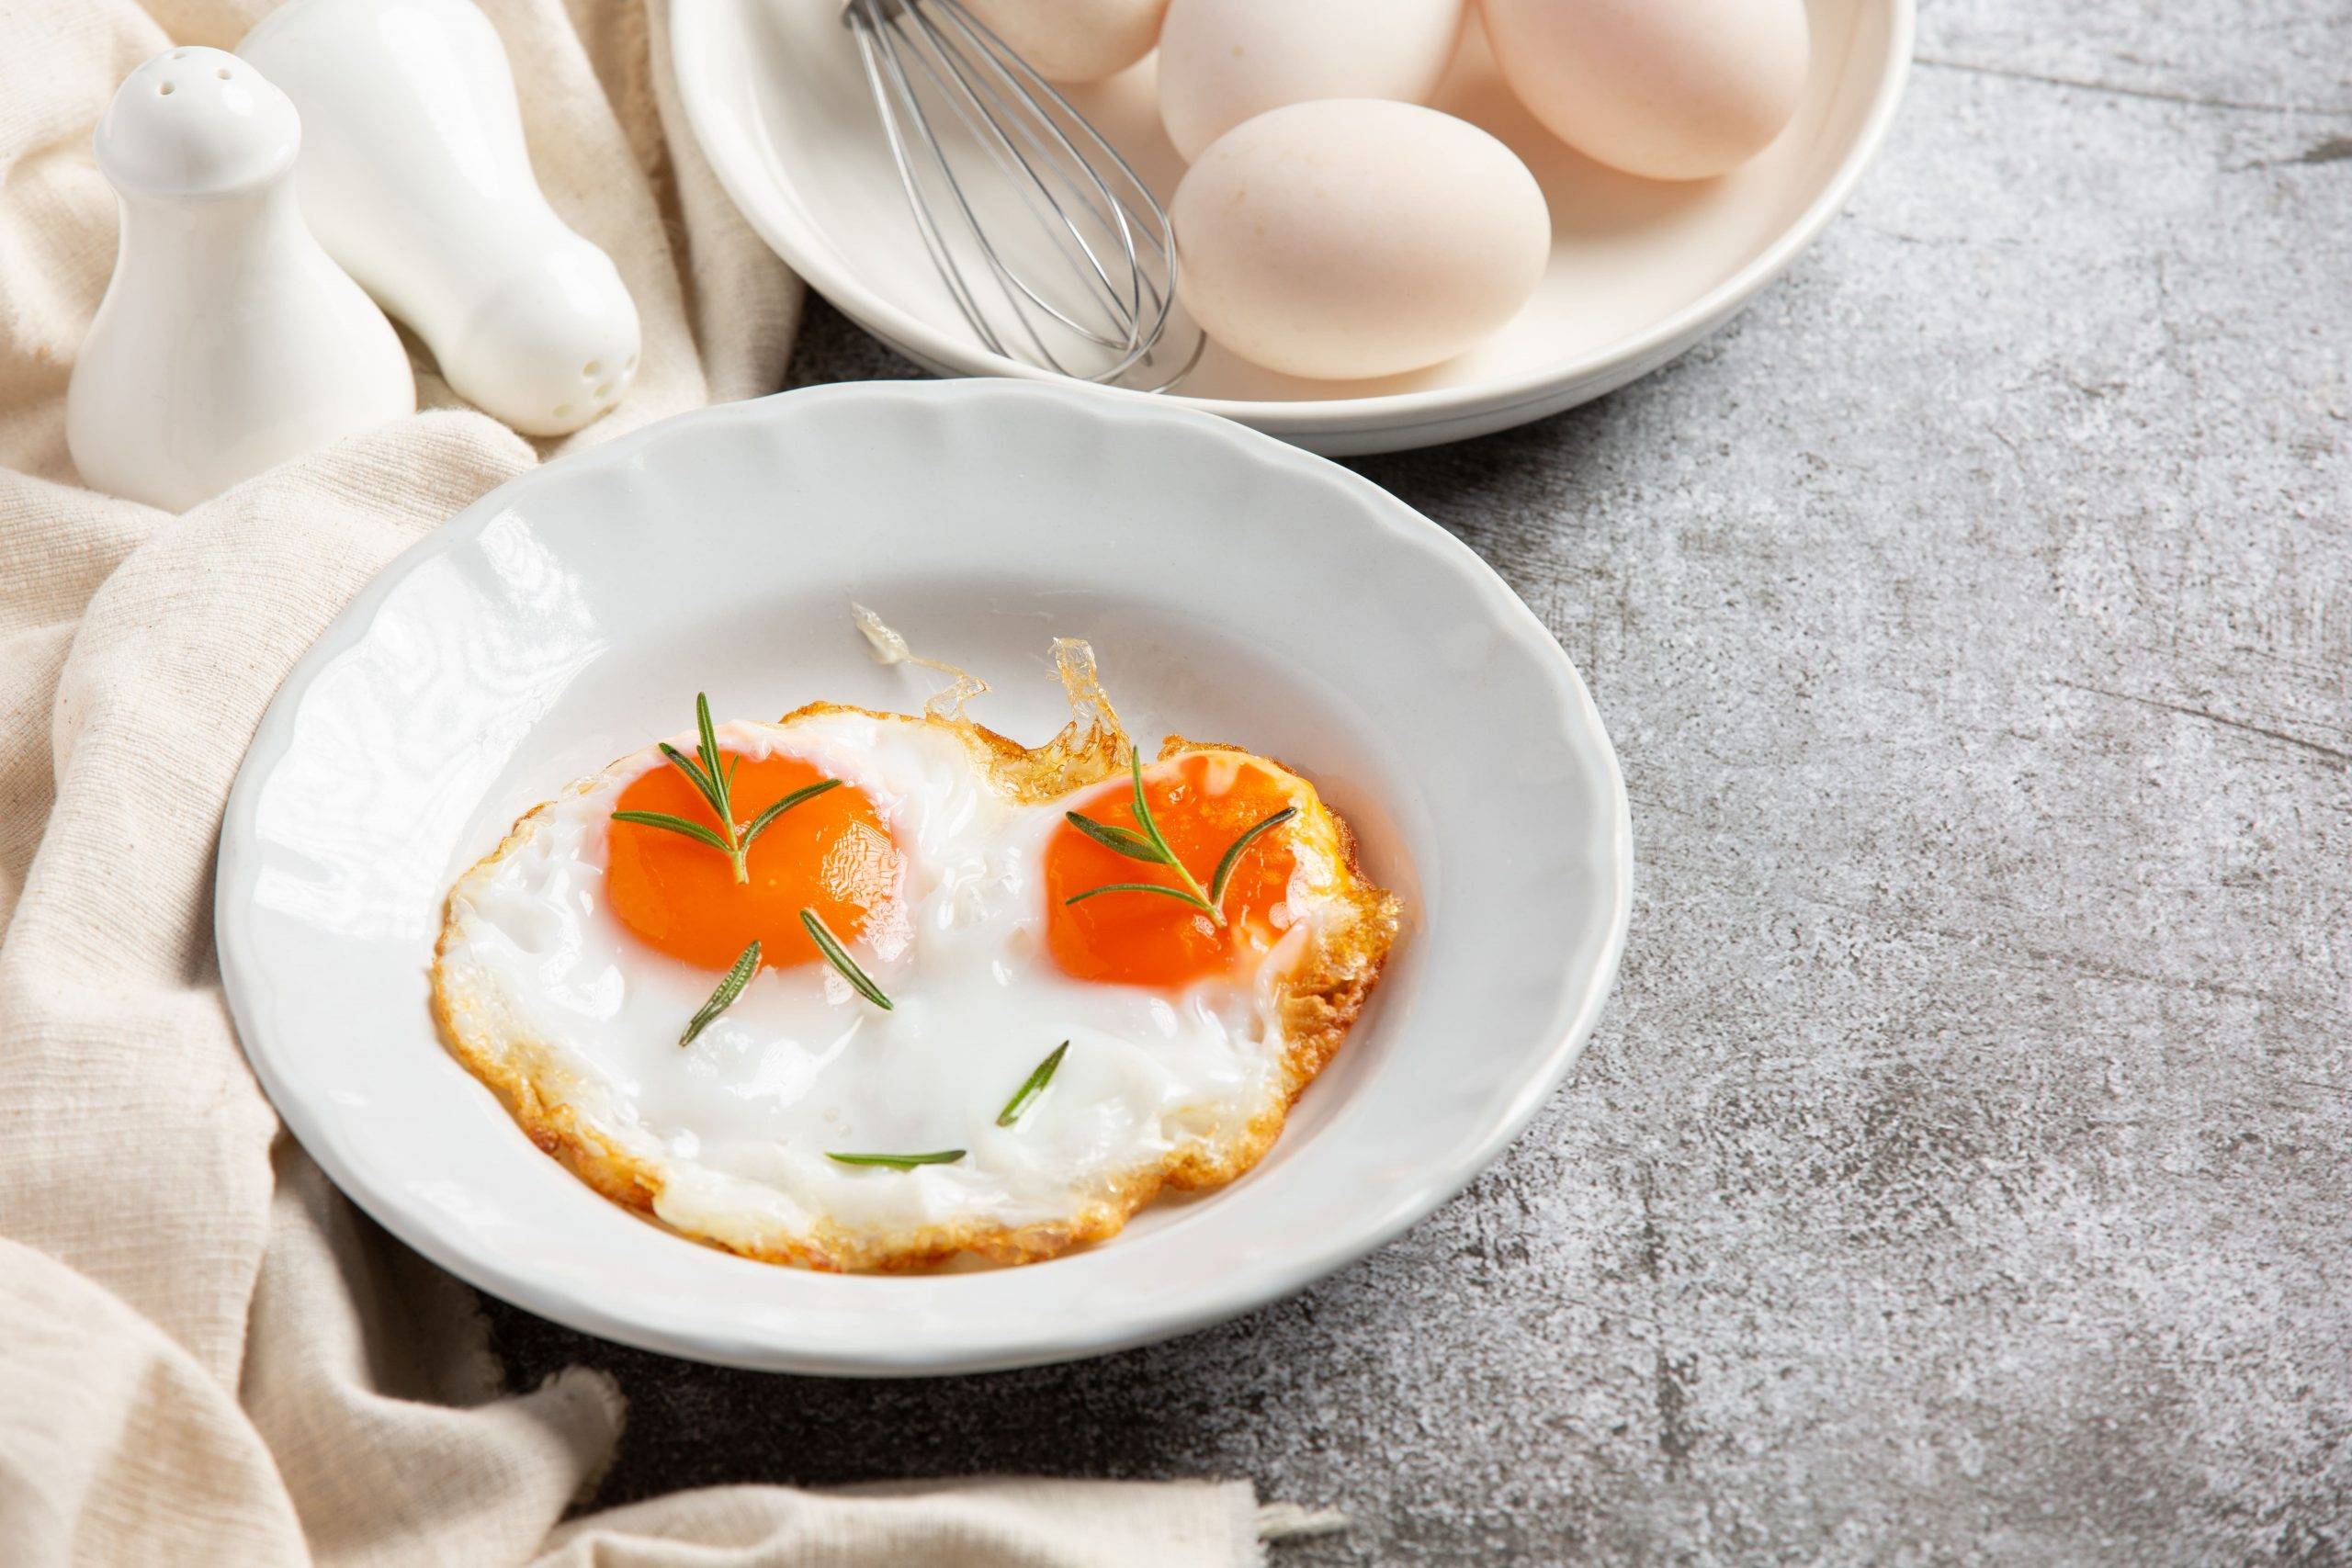 Bolehkah Bayi dan Anak-Anak Makan Telur Setengah Matang, Ini Penjelasan Dokter Anak